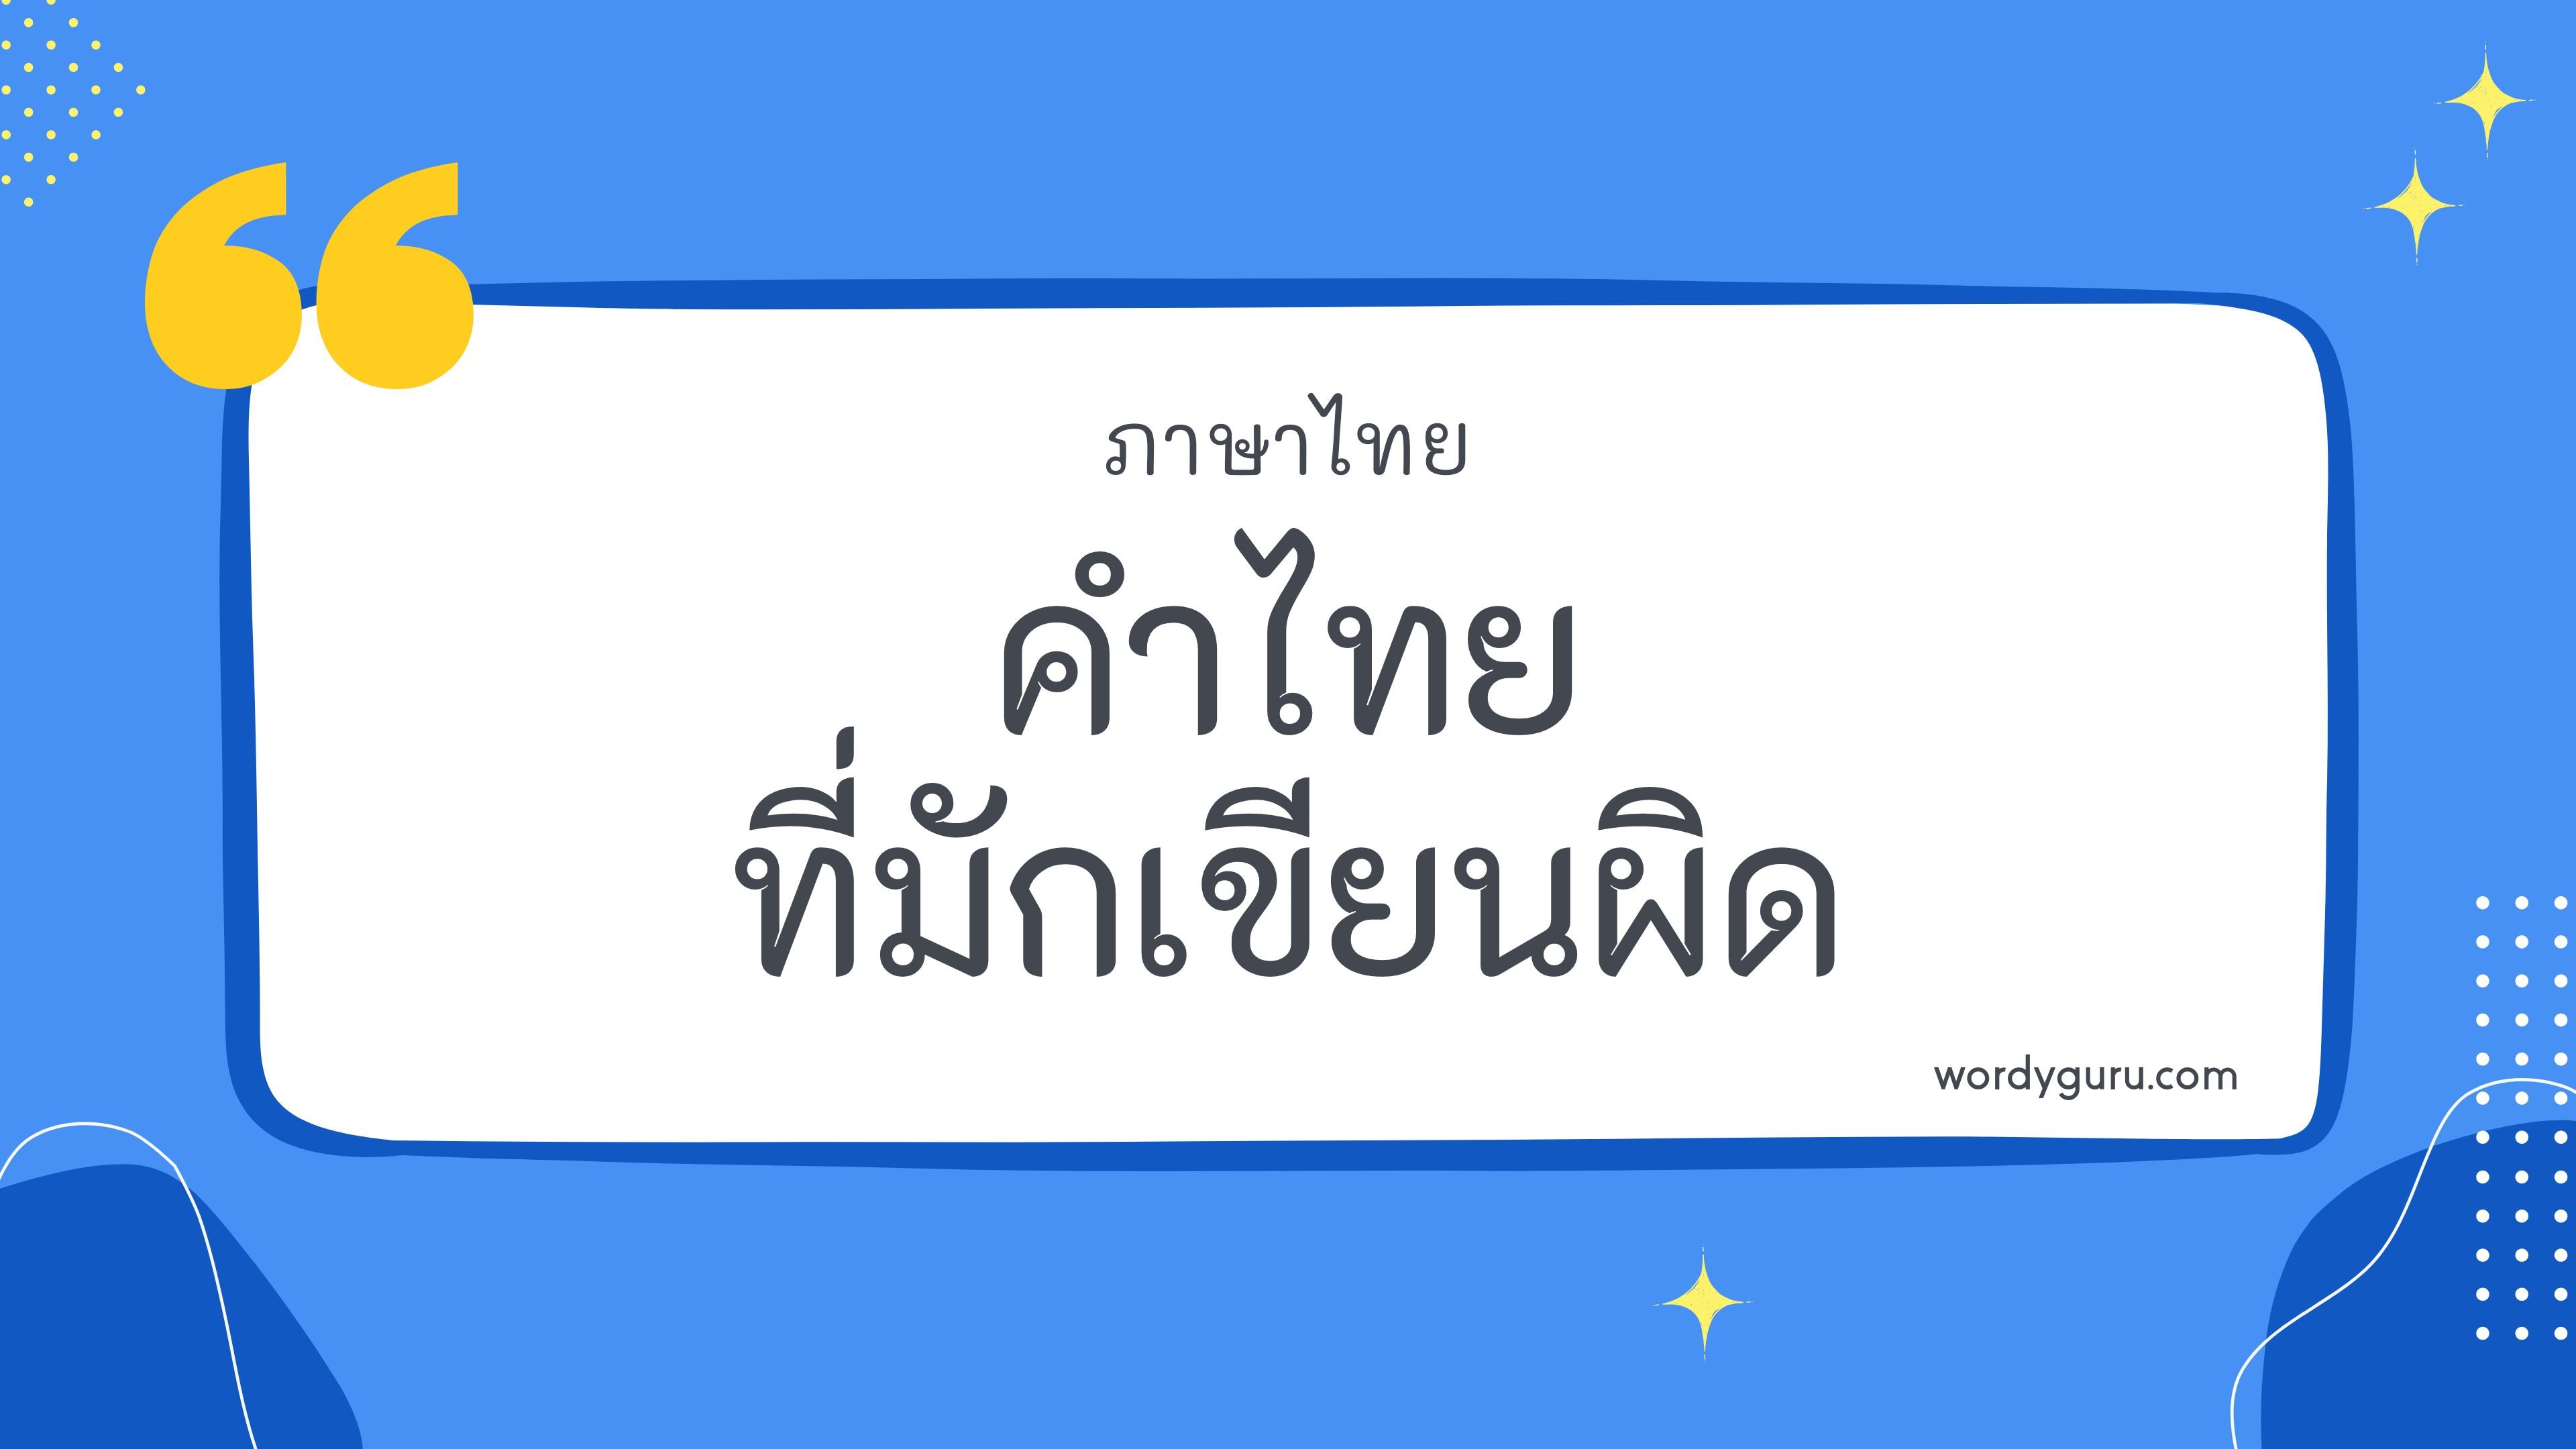 คำไทยที่มักเขียนผิด หมวด ญ ตามที่เคยรู้จัก คำในภาษาไทยที่มักเขียนผิด มีอยู่หลายคำ จะมีคำไหนที่เรารู้จักไหมนะ